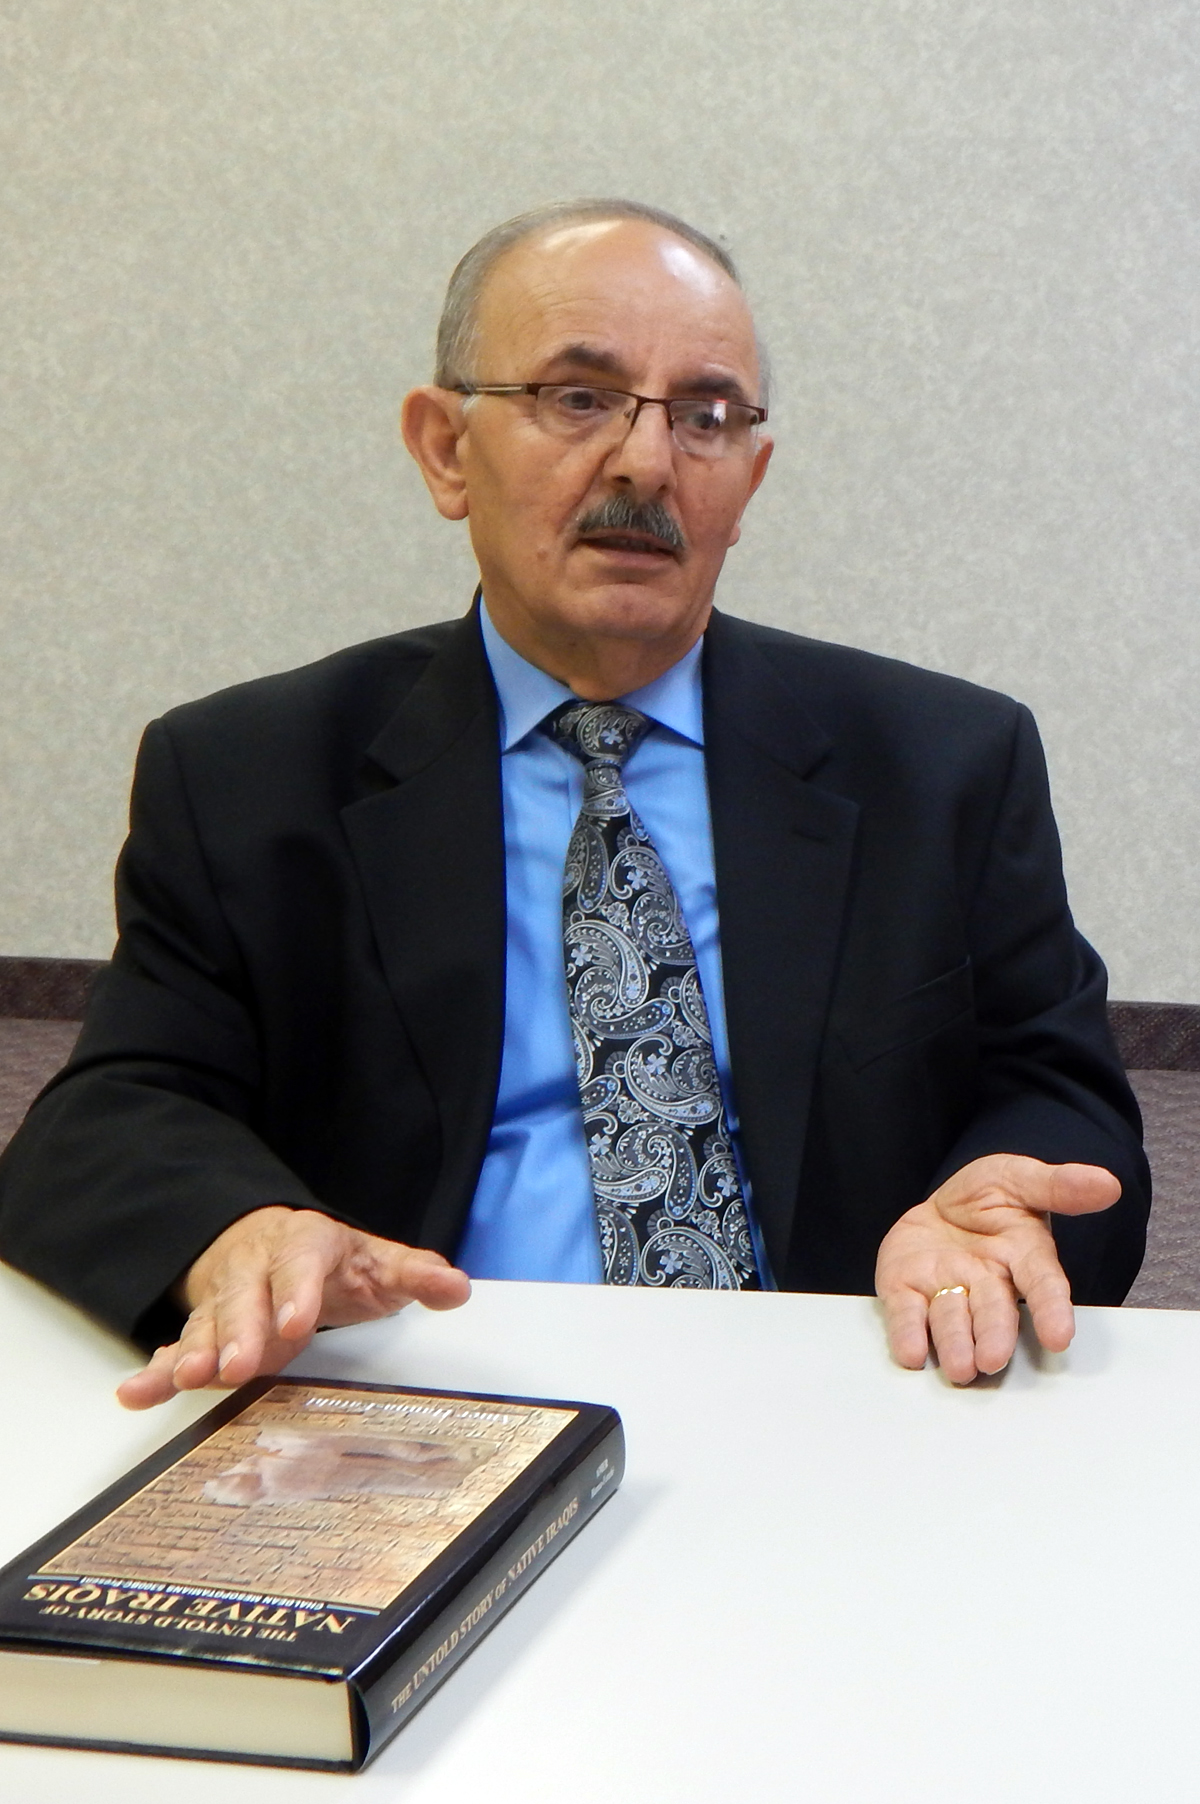 Scholar Ablah Ephrim Sawa